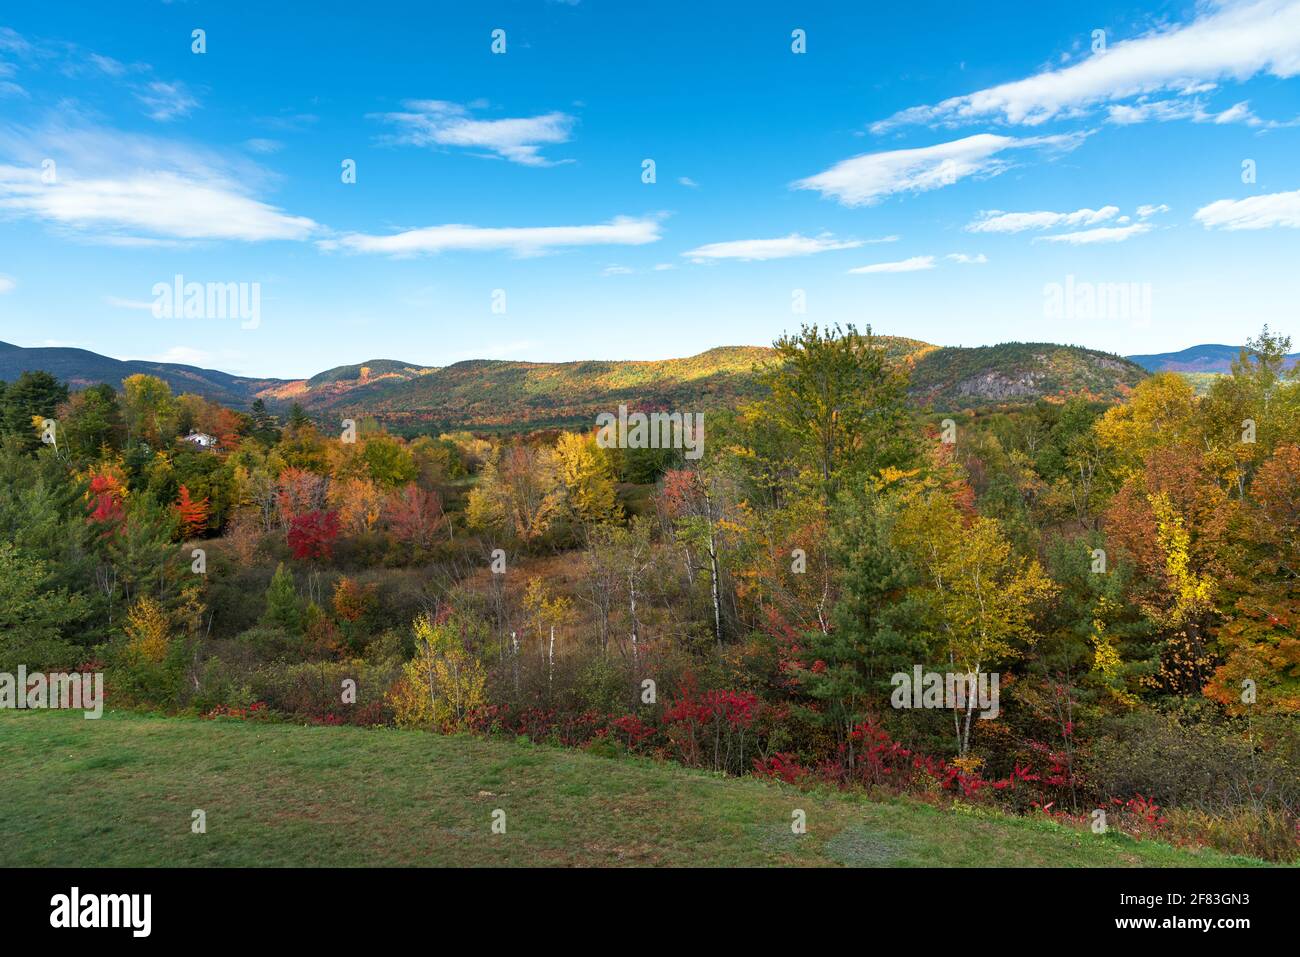 Paysage de montagne couvert de forêts caduques au sommet de feuillage d'automne sur un jour d'automne clair Banque D'Images